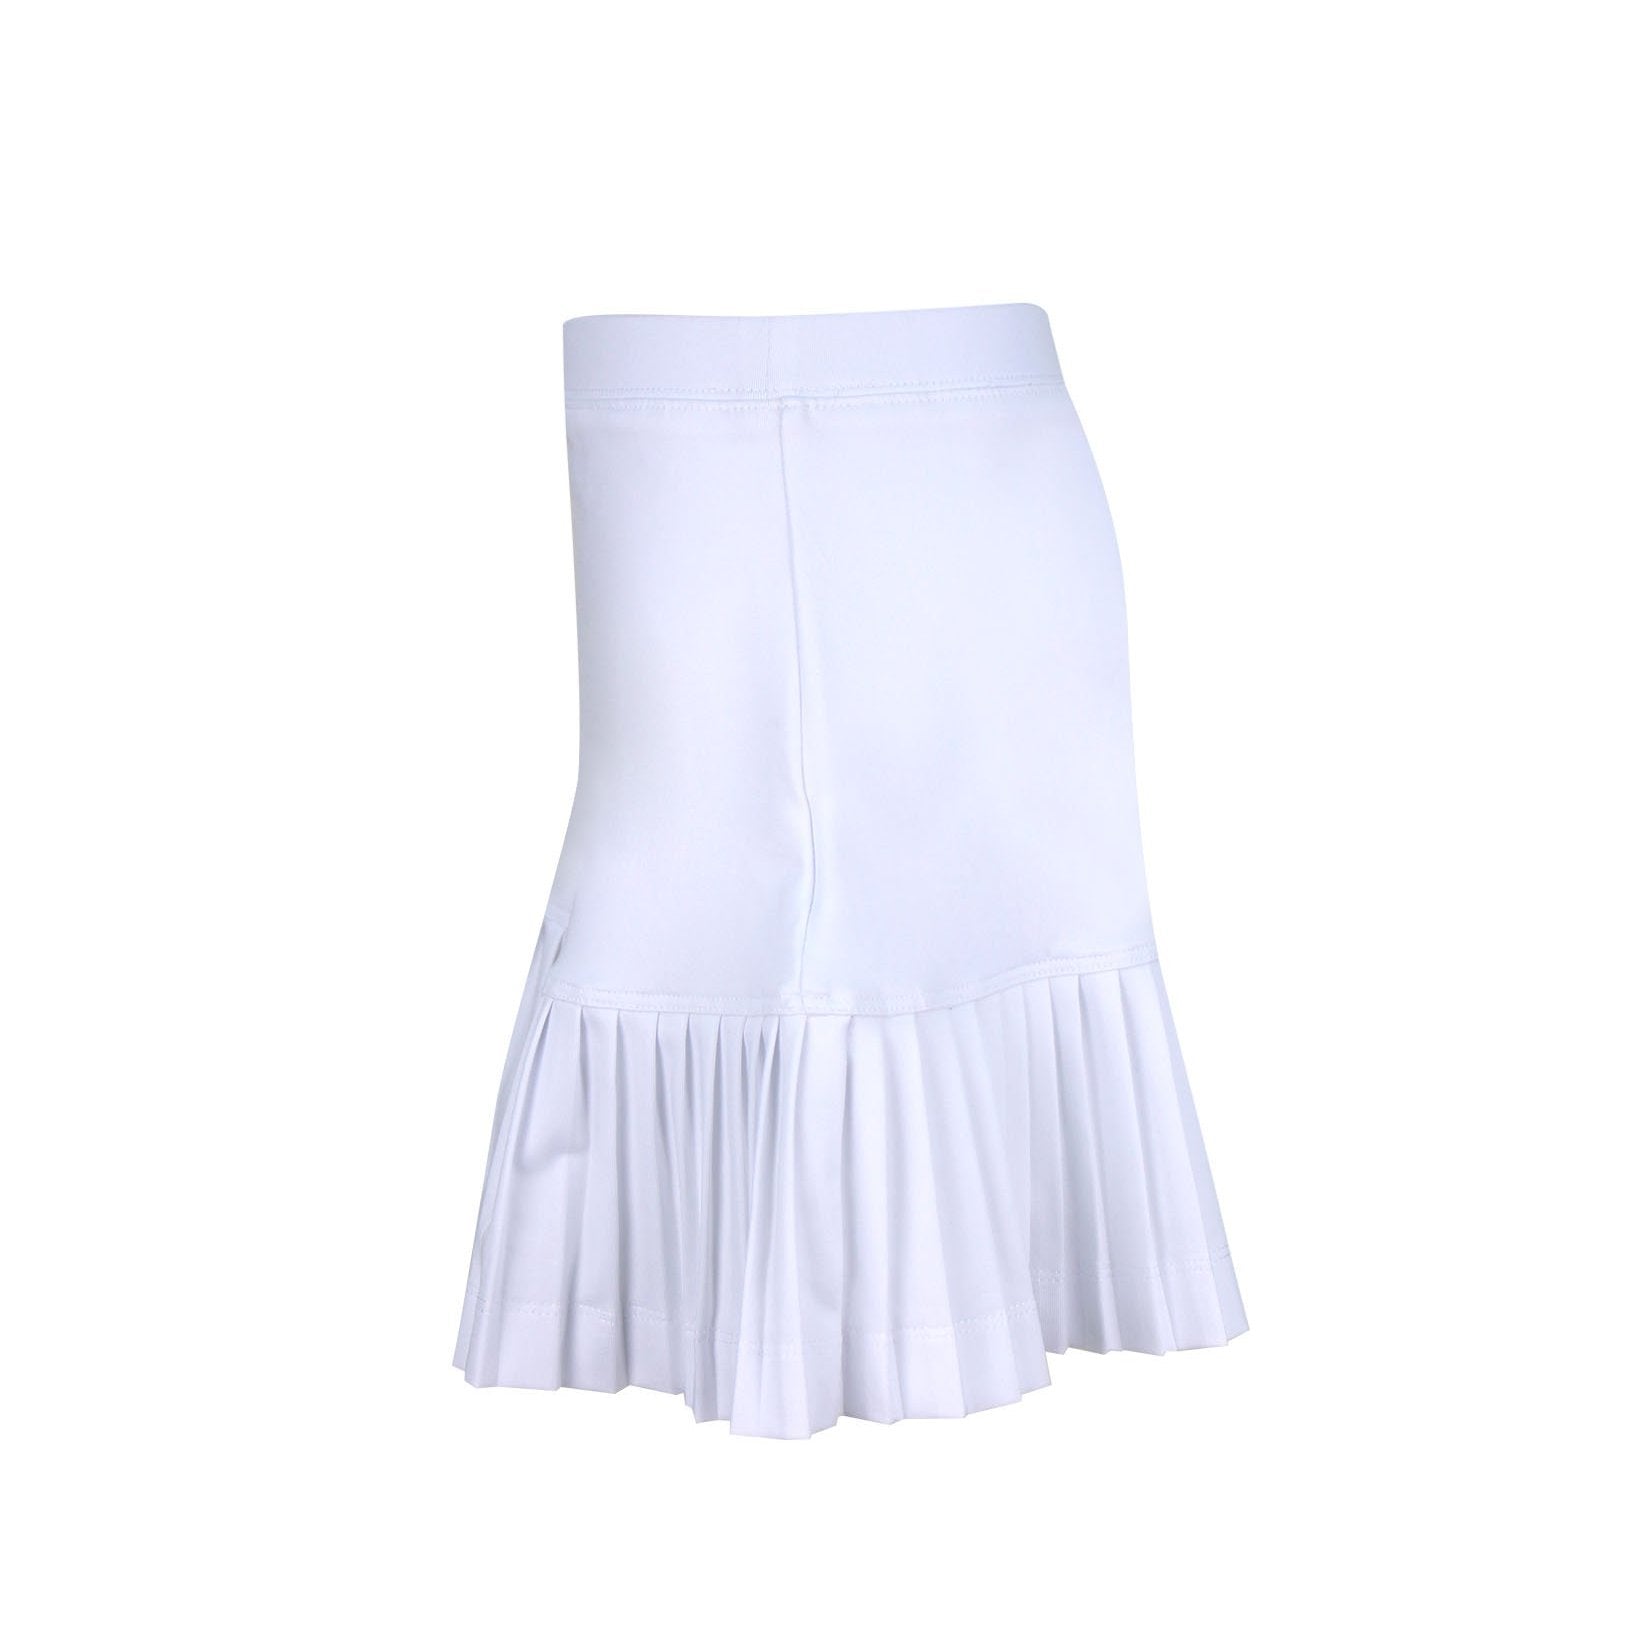 #Santorini Island White Skirt - Little Miss Tennis